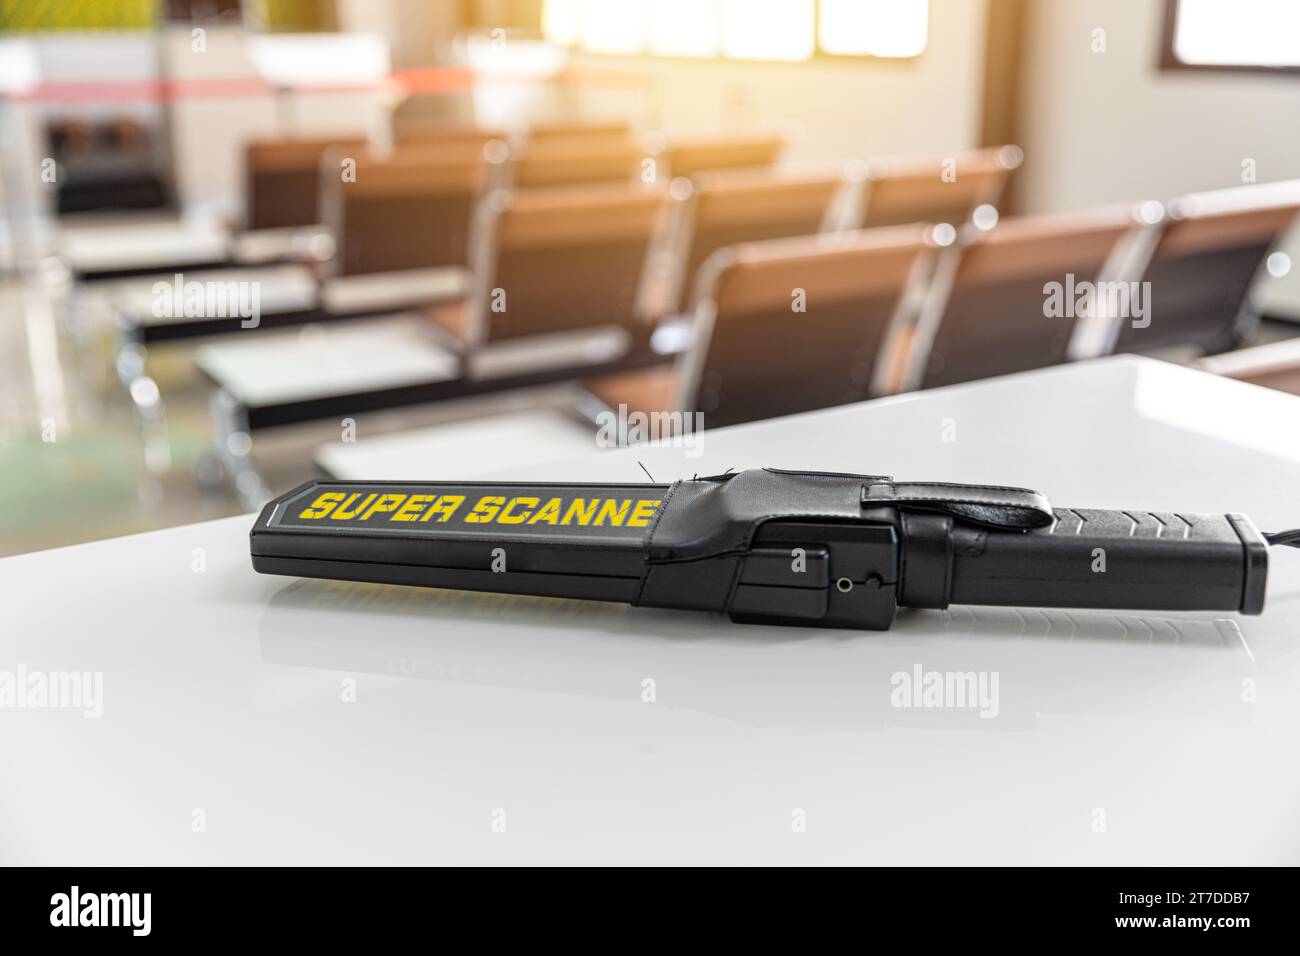 Nahaufnahme Metalldetektor Waffe Bombenscanner Werkzeug für die Sicherheitsanwendung am Flughafen oder öffentlichen Sicherheitsbereich Stockfoto